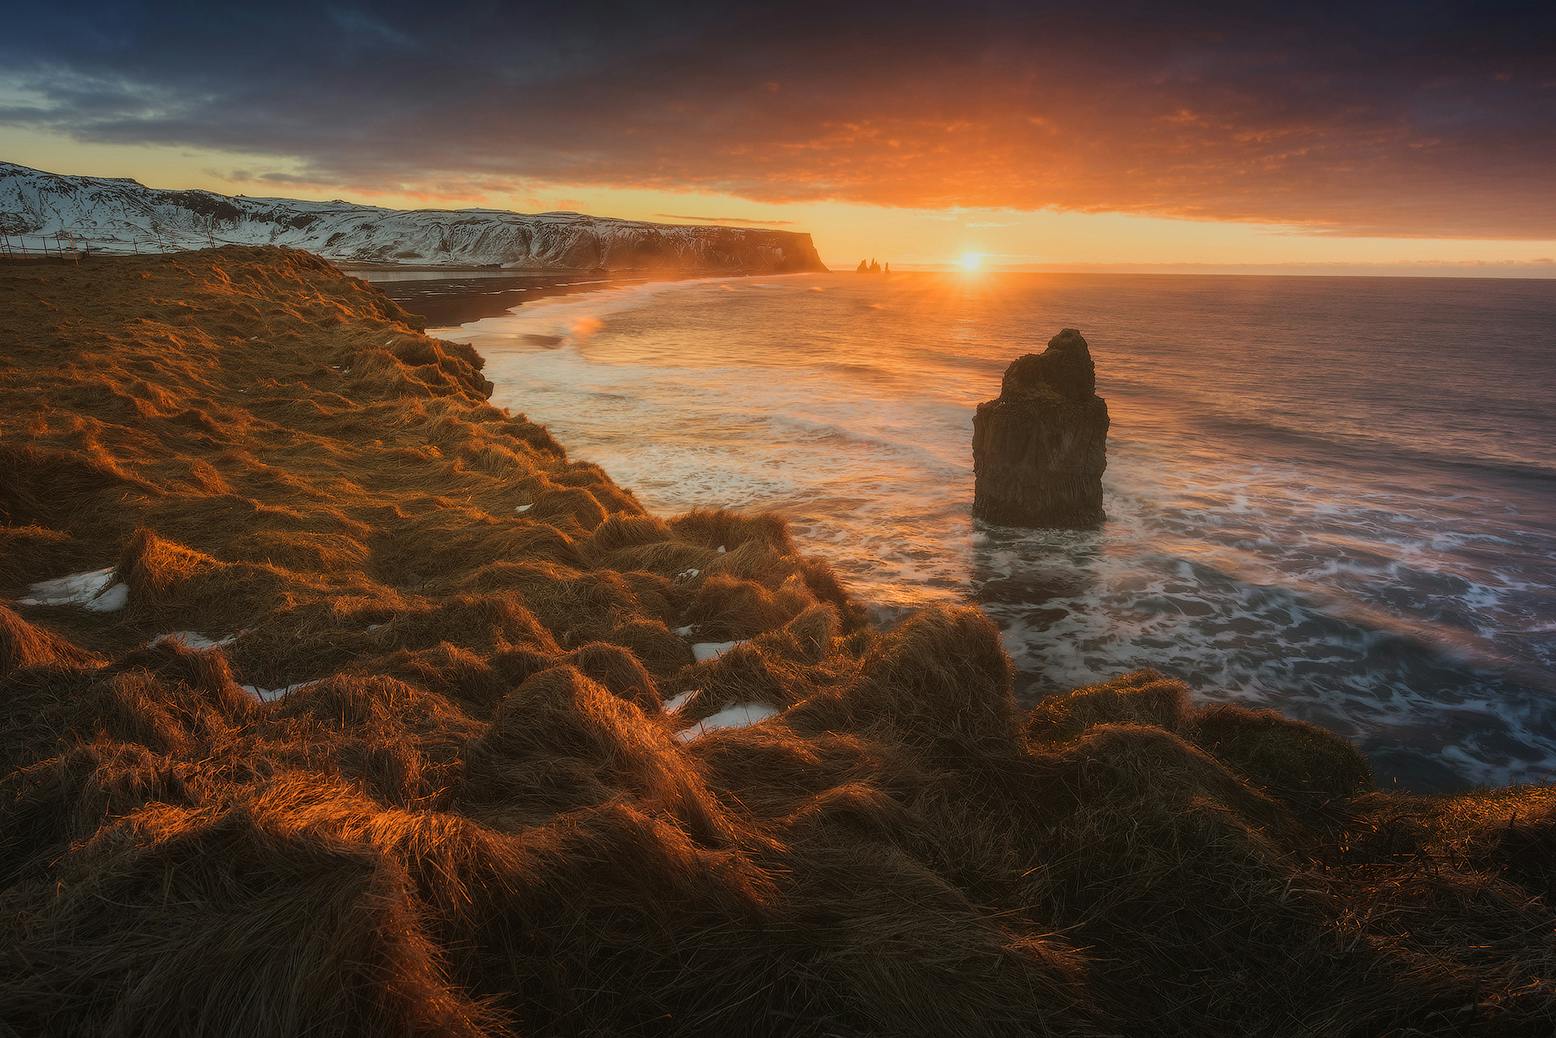 เวิร์คช็อปถ่ายภาพสองสัปดาห์รอบประเทศไอซ์แลนด์ในช่วงฤดูใบไม้ร่วง